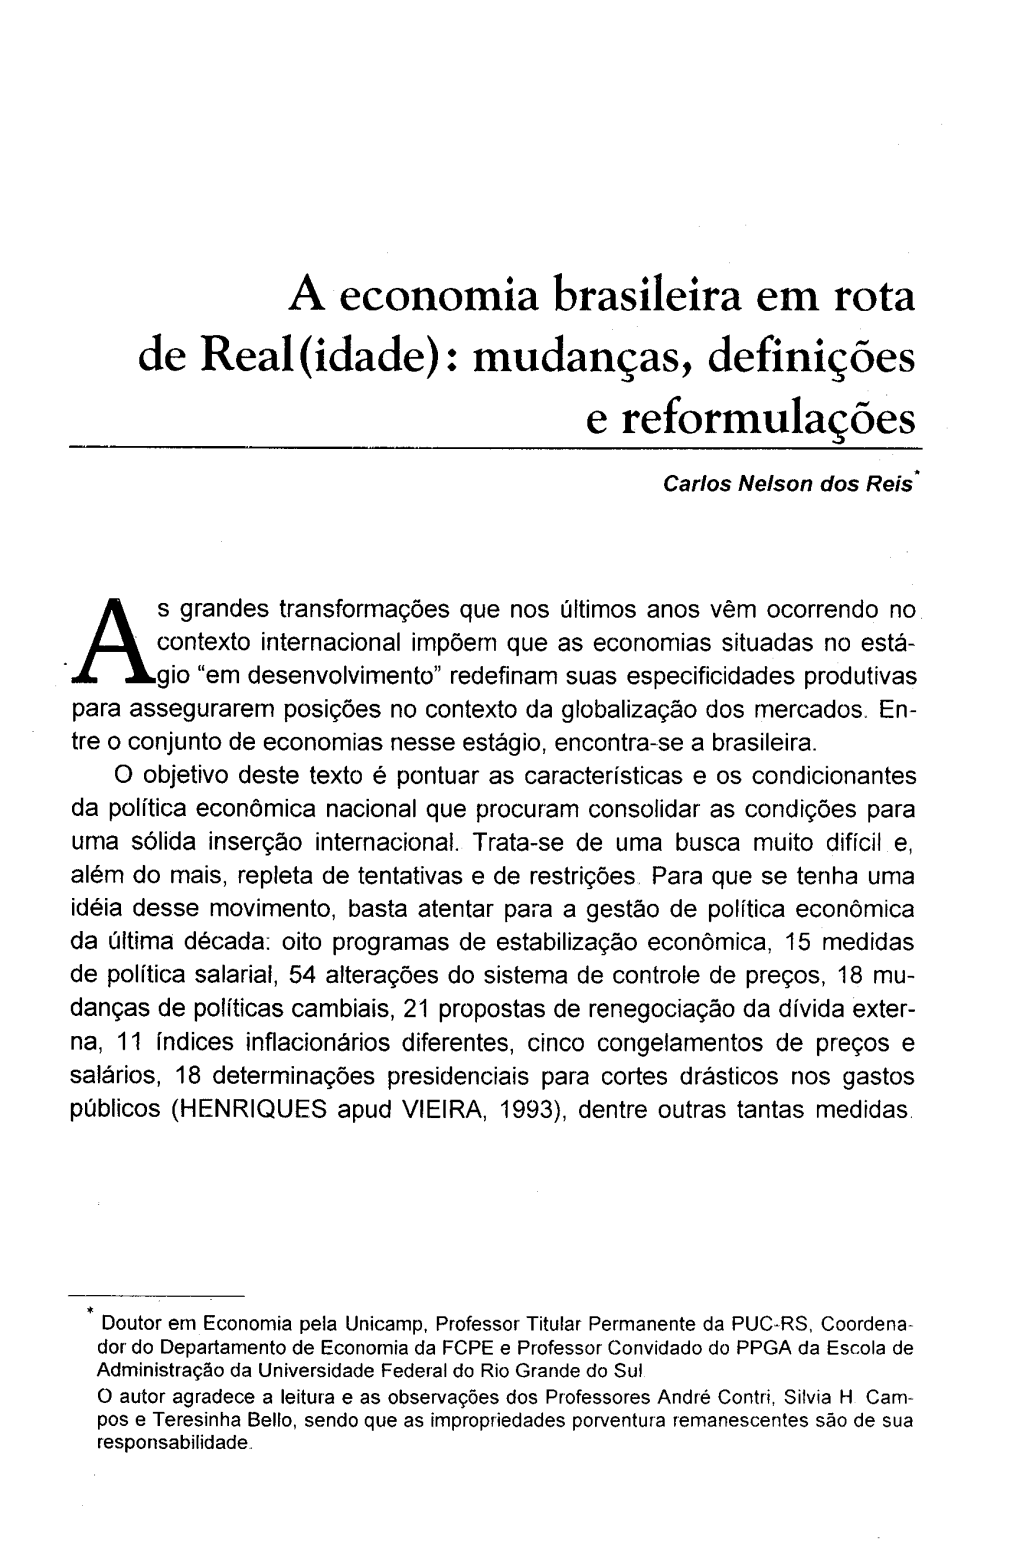 A Economia Brasileira Em Rota De Real (Idade): Mudanças, Definições E Reformulações